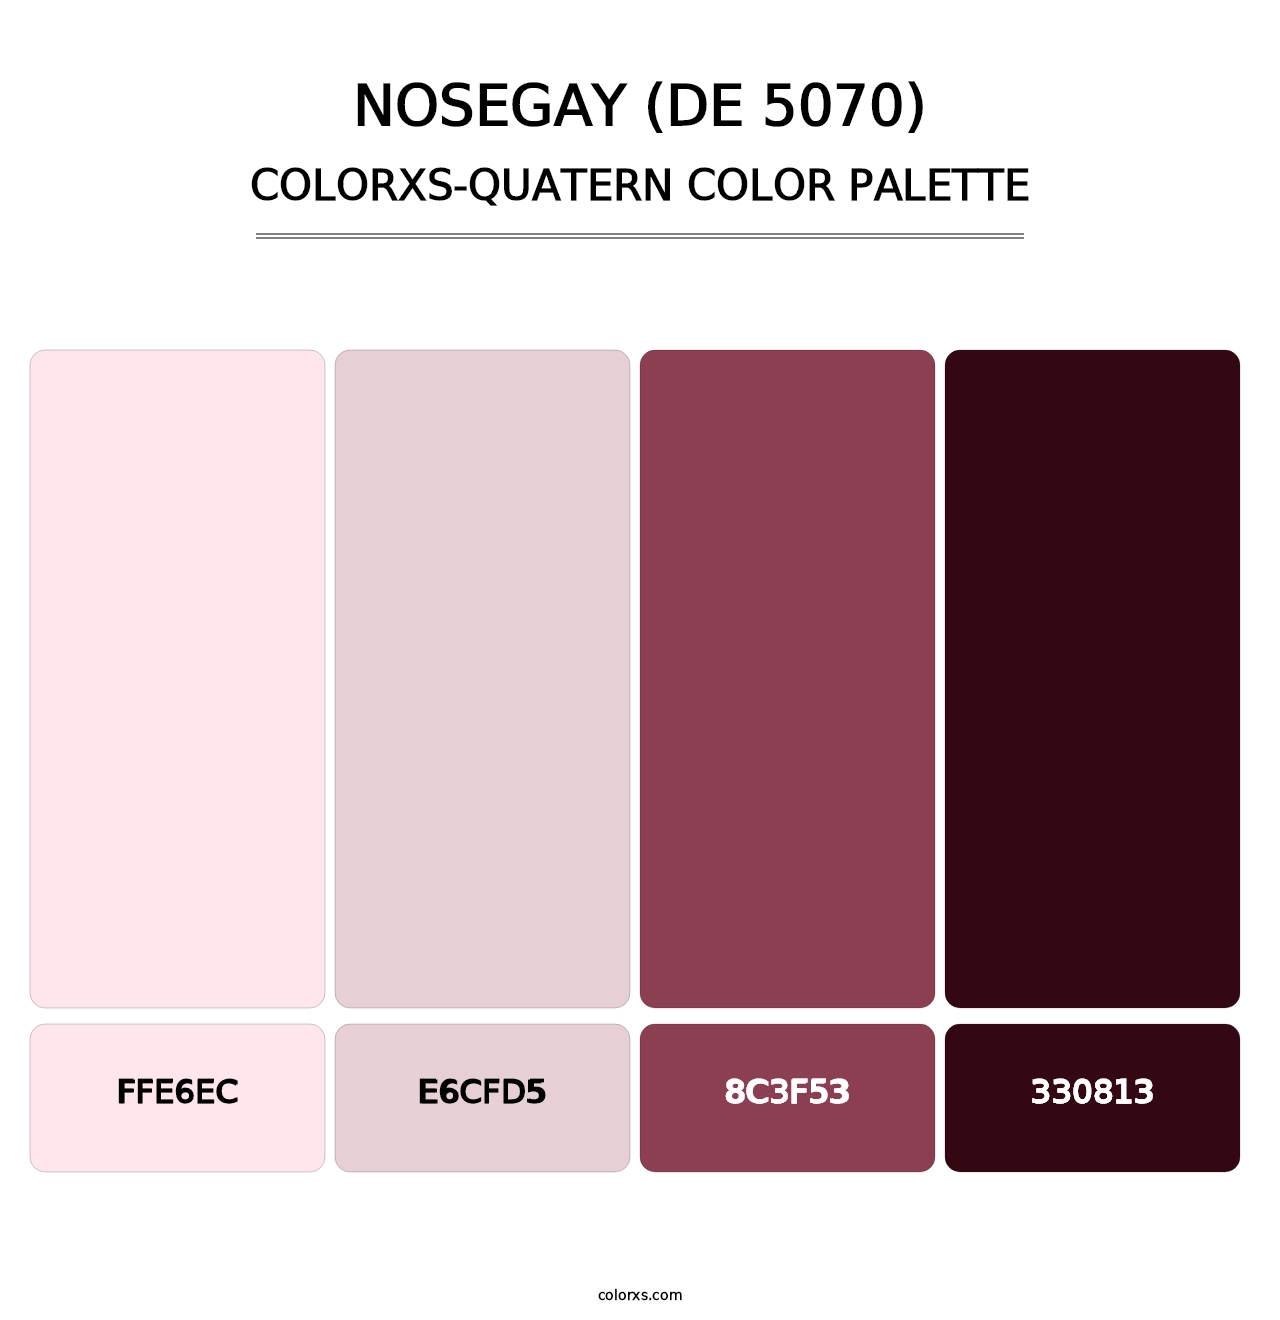 Nosegay (DE 5070) - Colorxs Quatern Palette